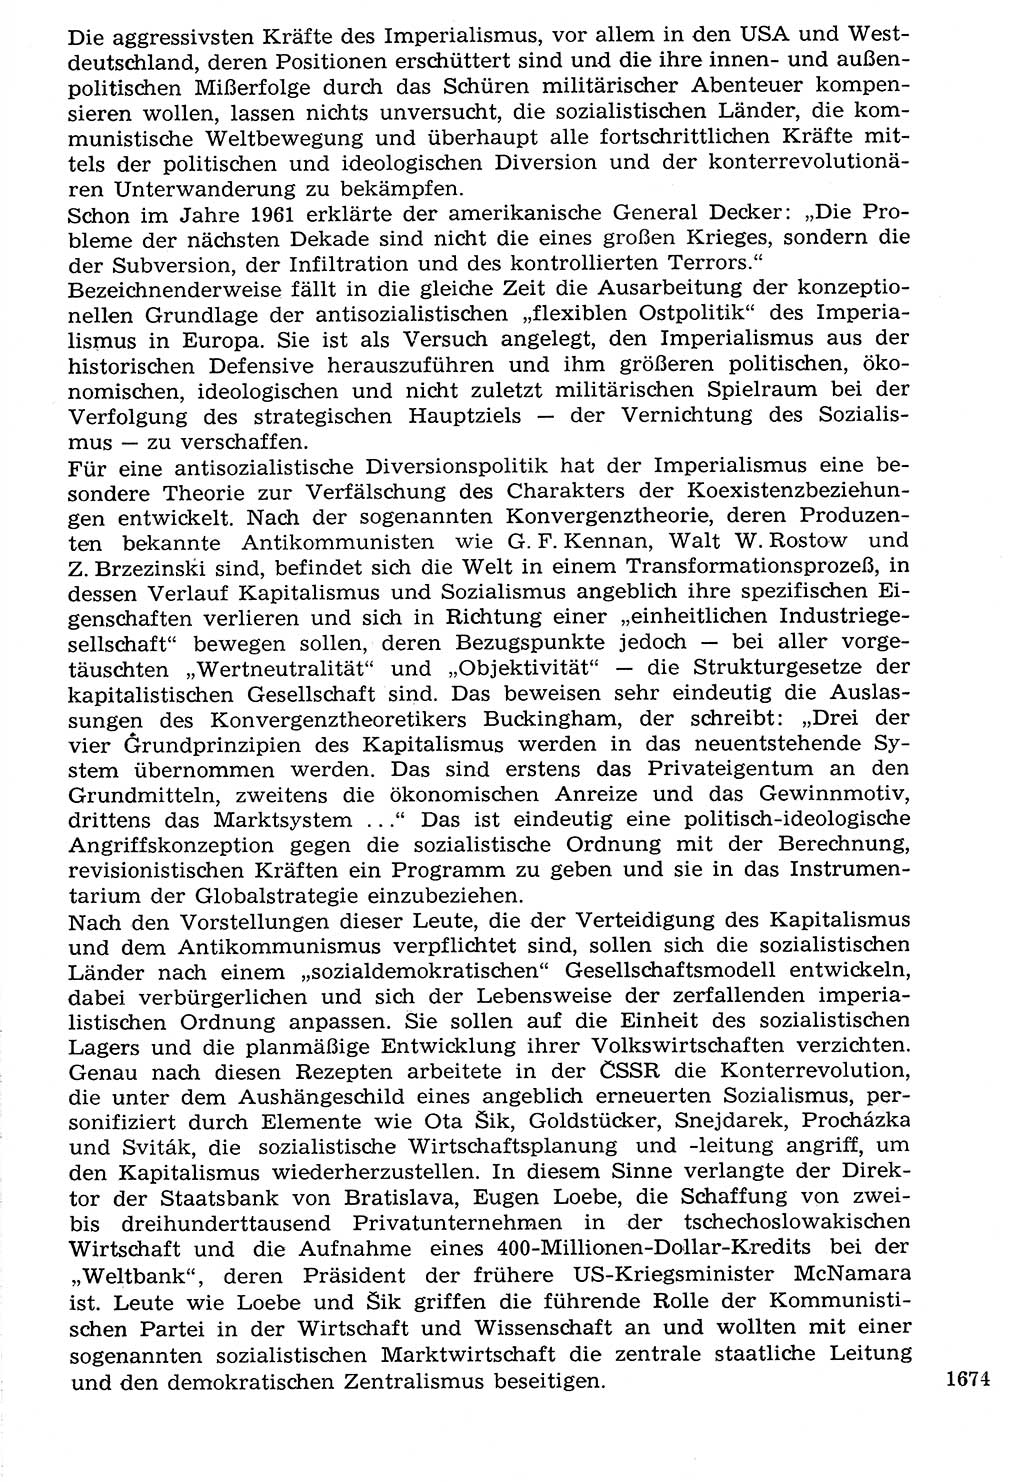 Staat und Recht (StuR), 17. Jahrgang [Deutsche Demokratische Republik (DDR)] 1968, Seite 1674 (StuR DDR 1968, S. 1674)